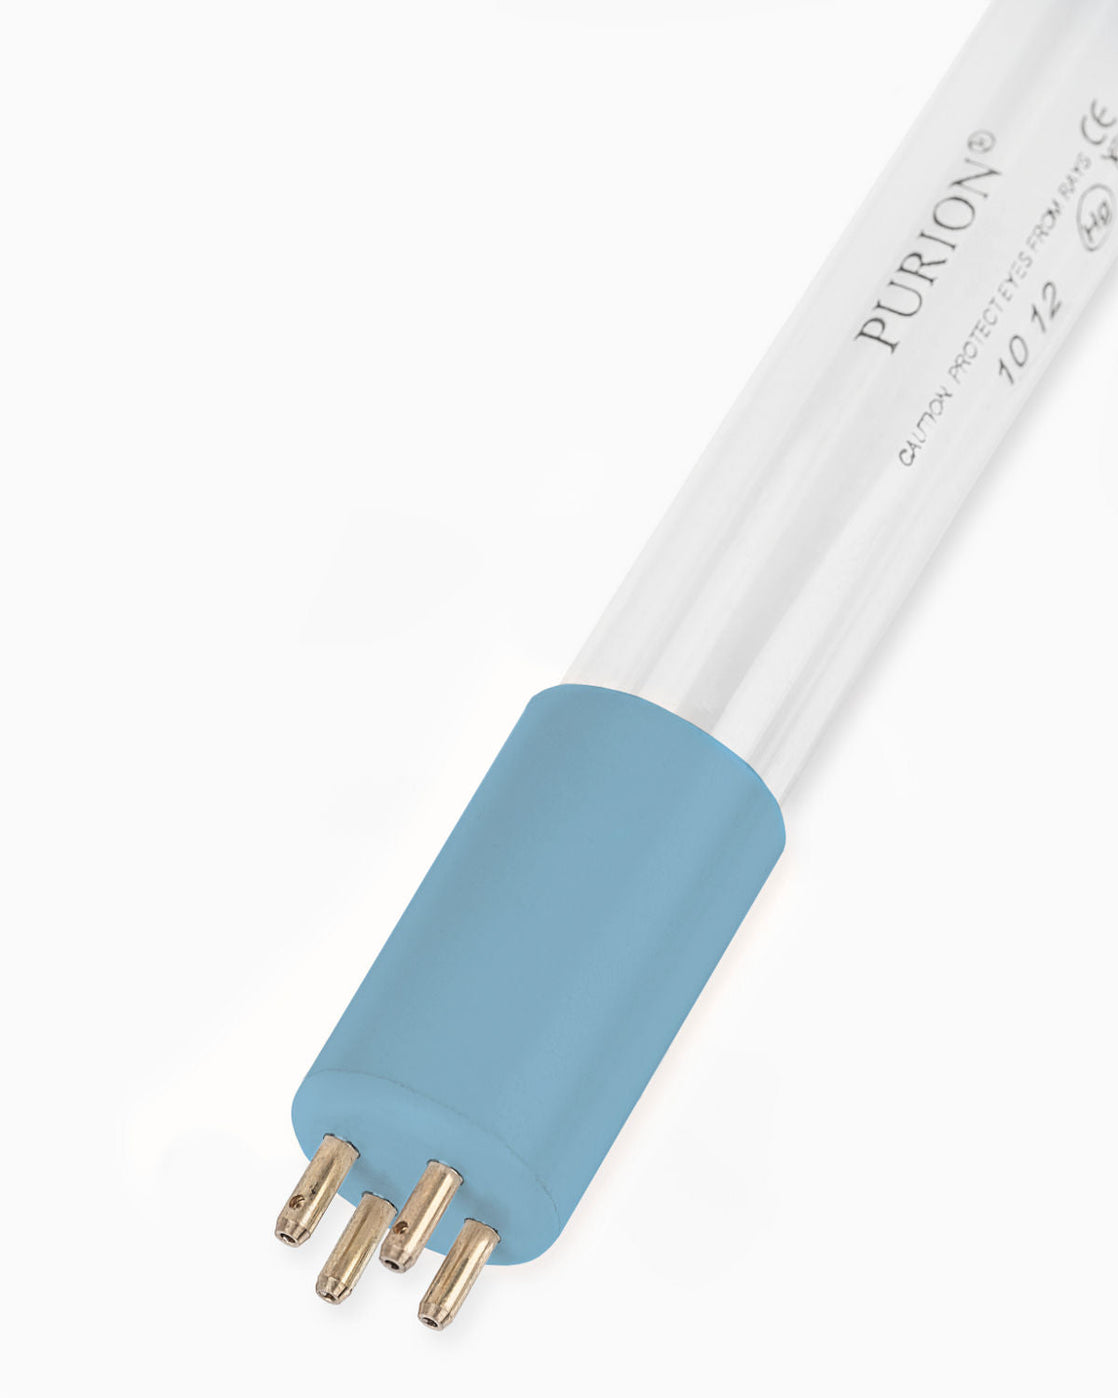 Eine blaue PURION UVC Lampe für DVGW Zert Röhre auf weißem Hintergrund.